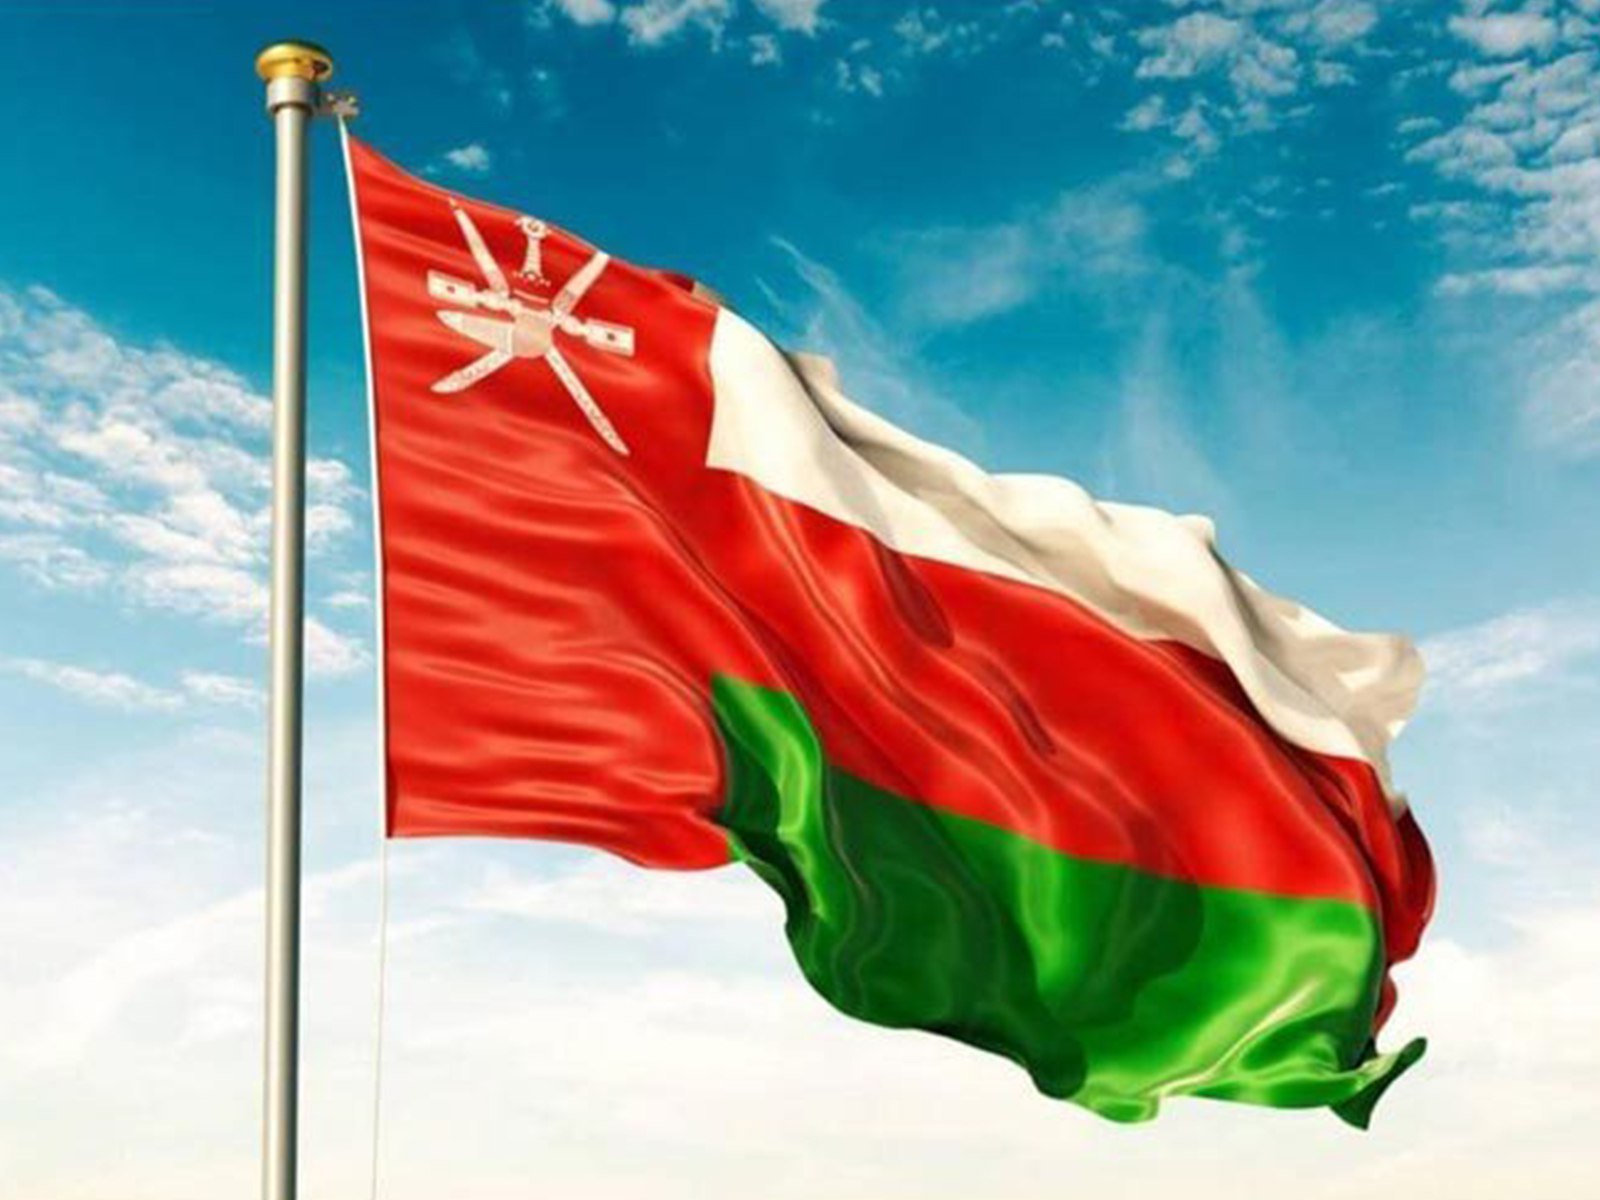 سلطنة عمان تغلق محافظة مسقط من 10 إلى 22 أبريل - عالم واحد - العرب - البيان